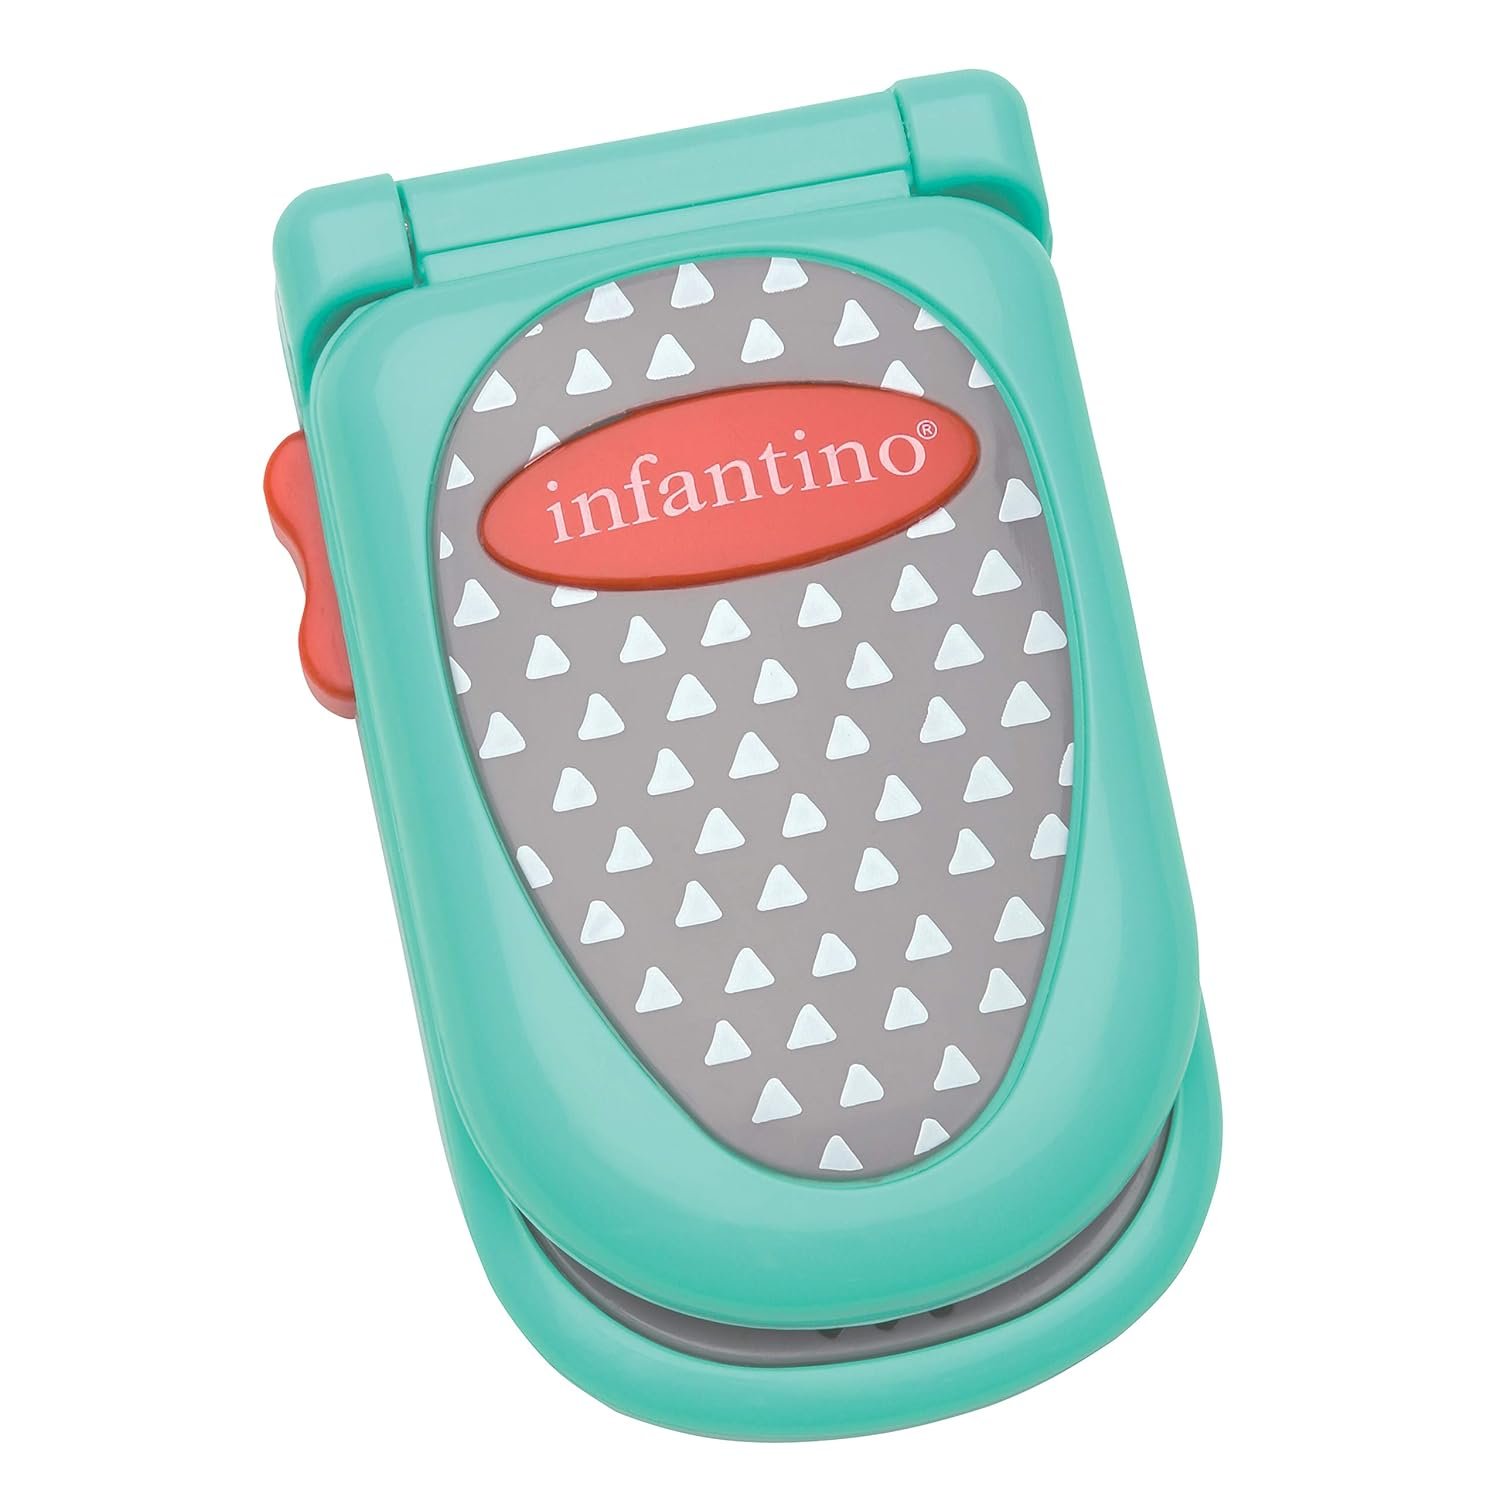 Infantino Flip and Peek Fun Phone Review